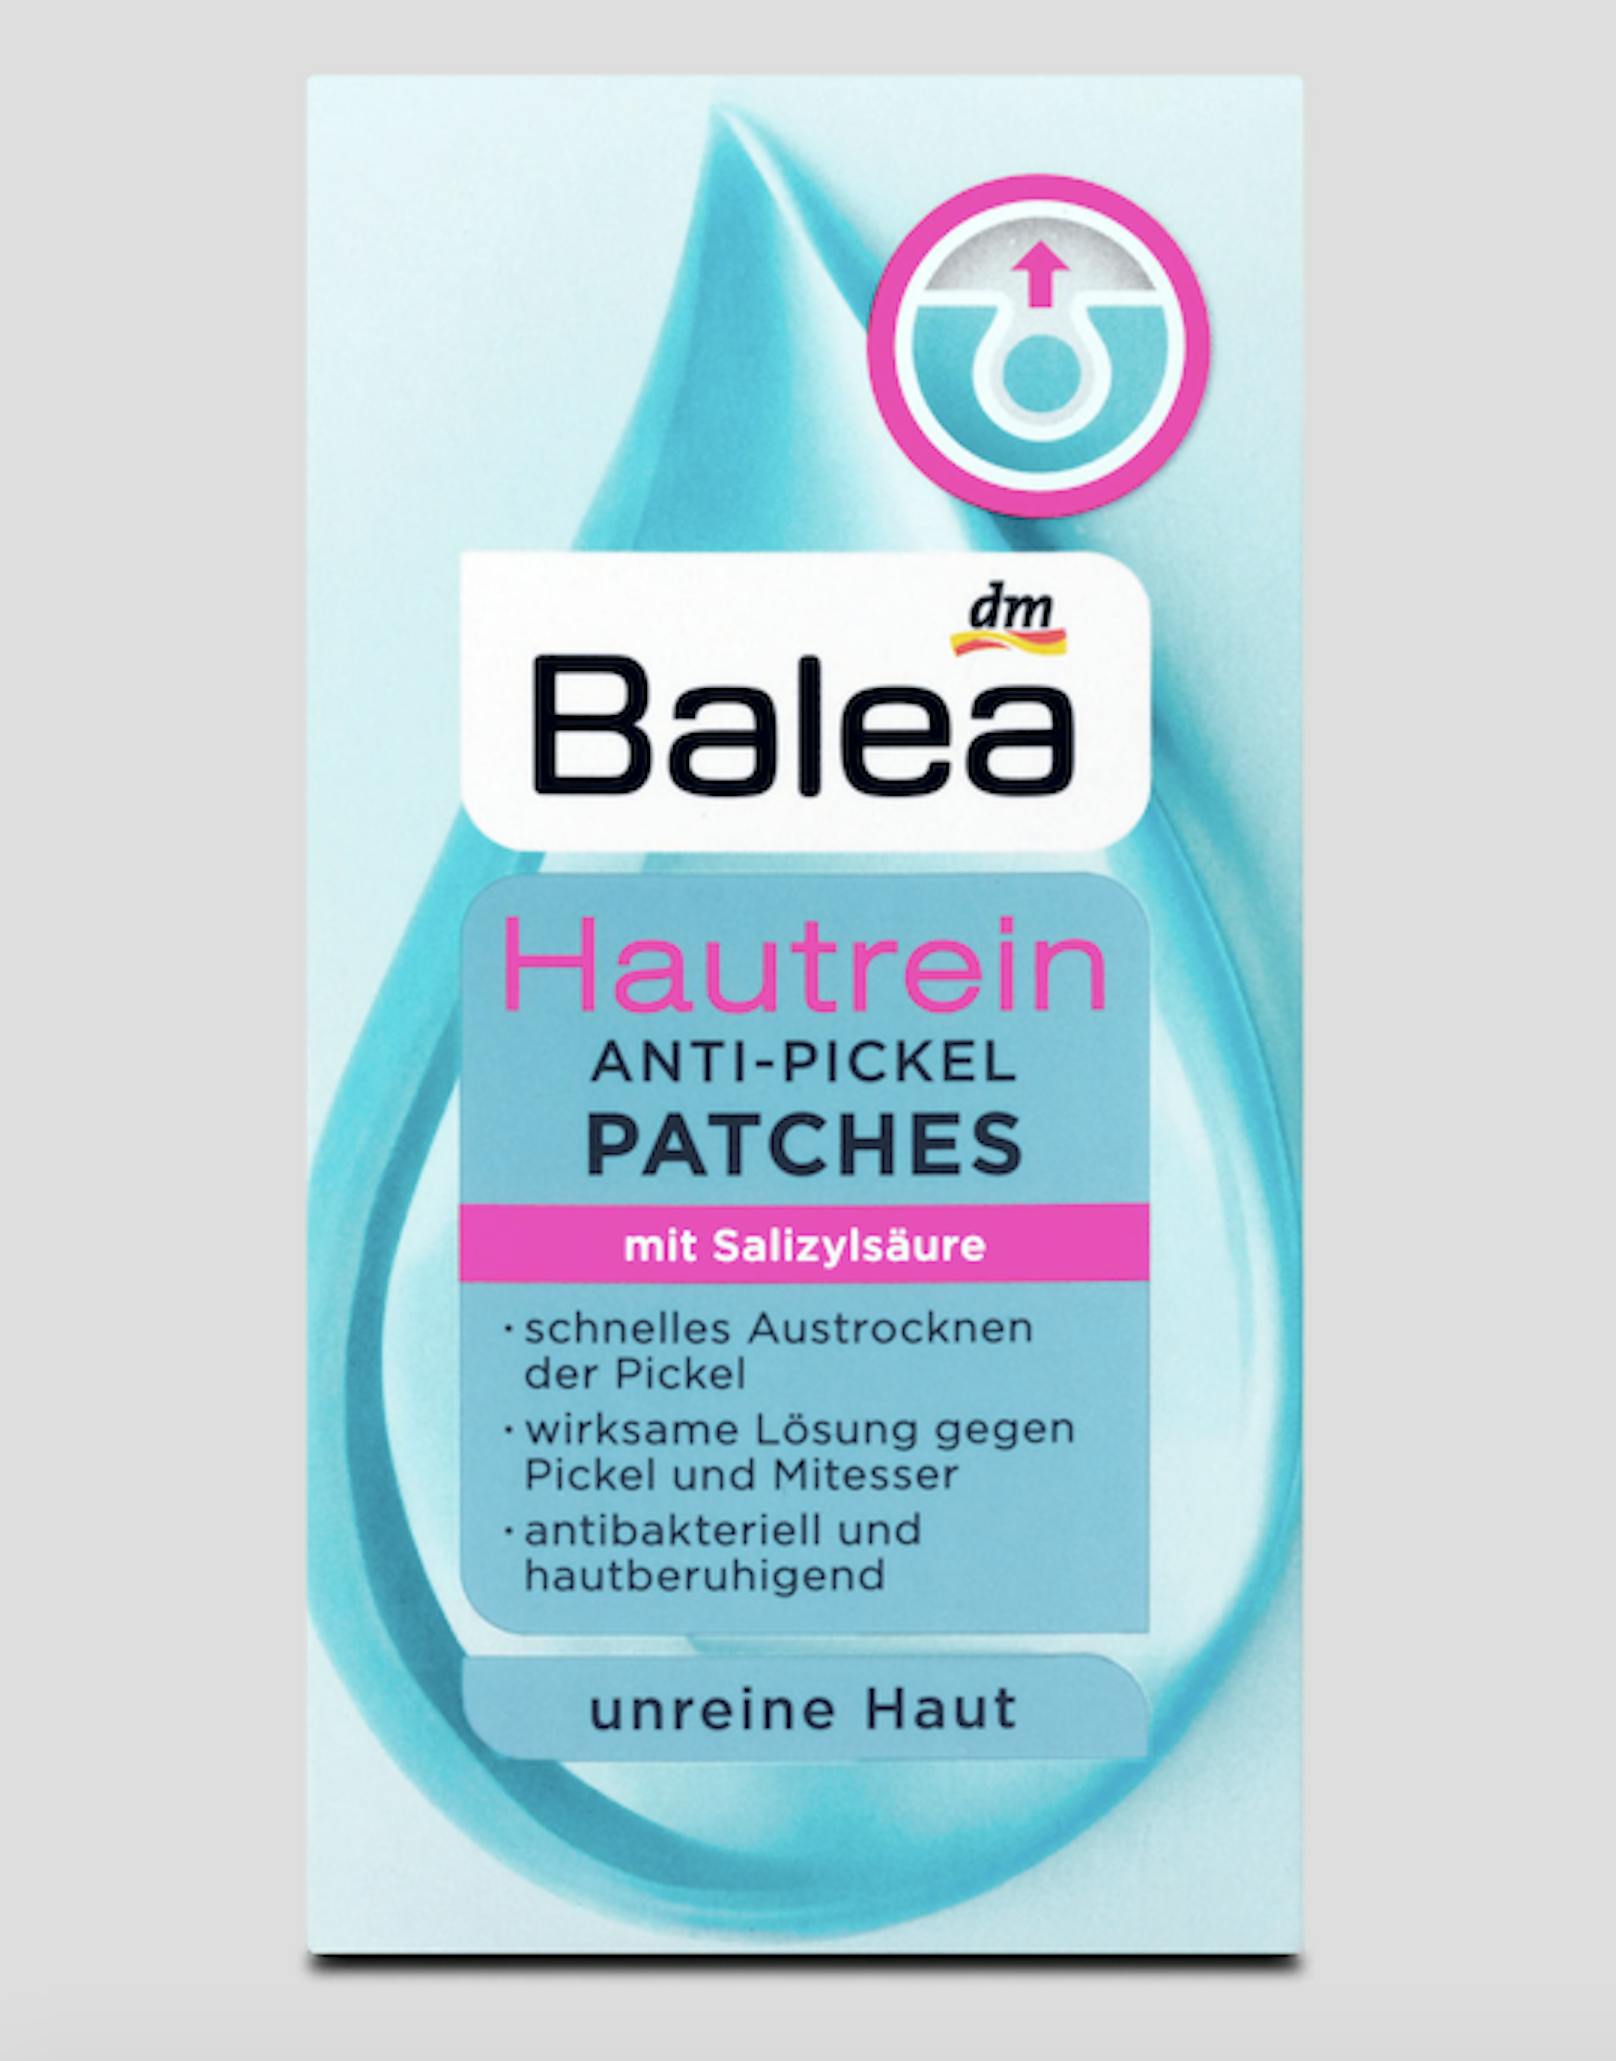 Hautrein Anti-Pickel Patches von Balea um 2,15 Euro.